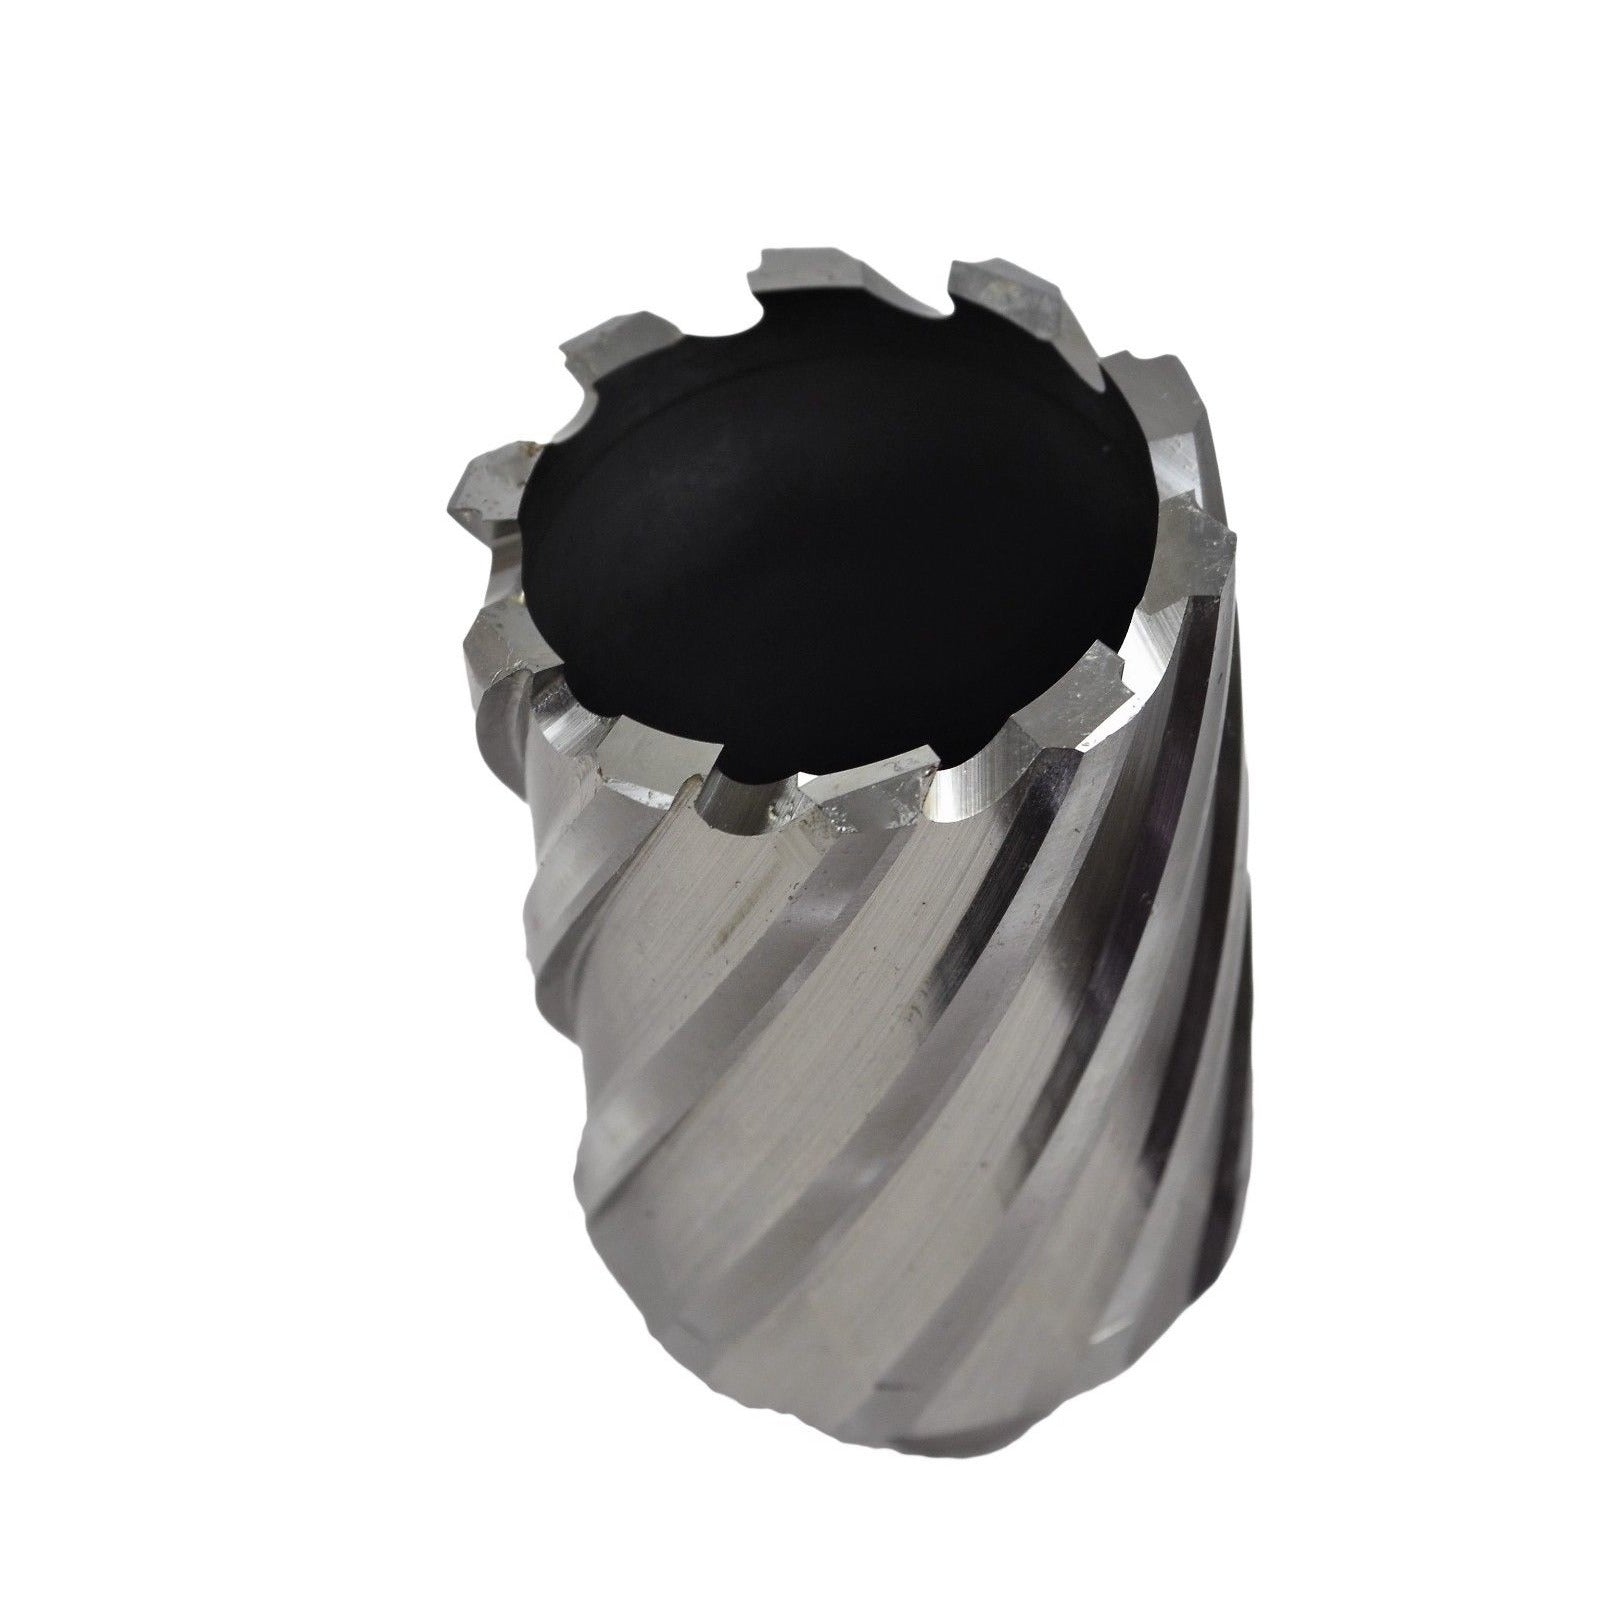 46x50 mm HSS Annular Broach Cutter ; Rotabroach Magnetic Drill ; Universal Shank